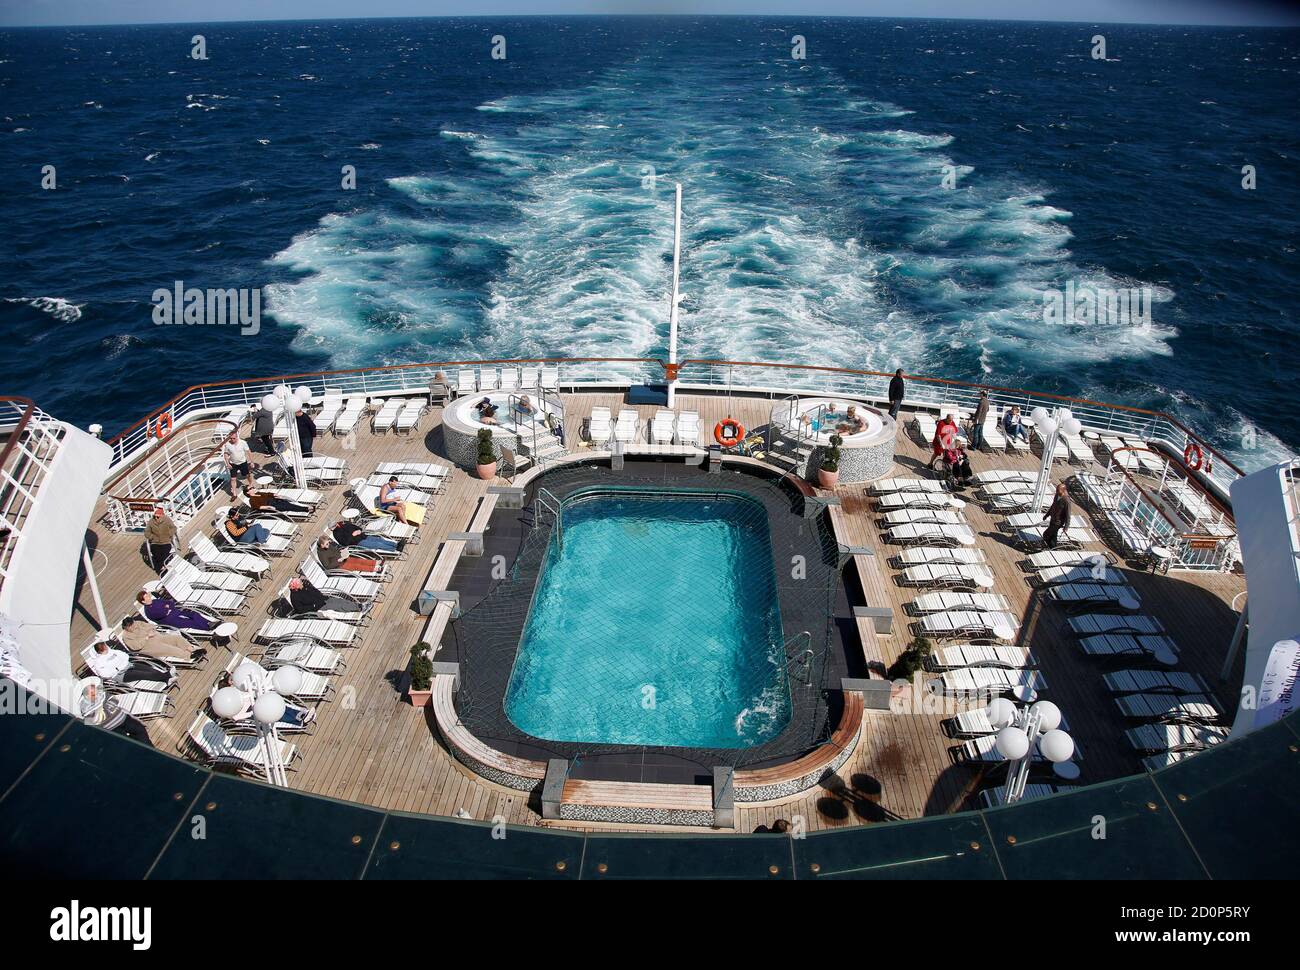 Les passagers profitent du soleil sur la terrasse de la poupe en route vers  Halifax lors de la croisière Titanic Memorial Cruise dans l'océan  Atlantique ouest le 15 avril 2012. La croisière